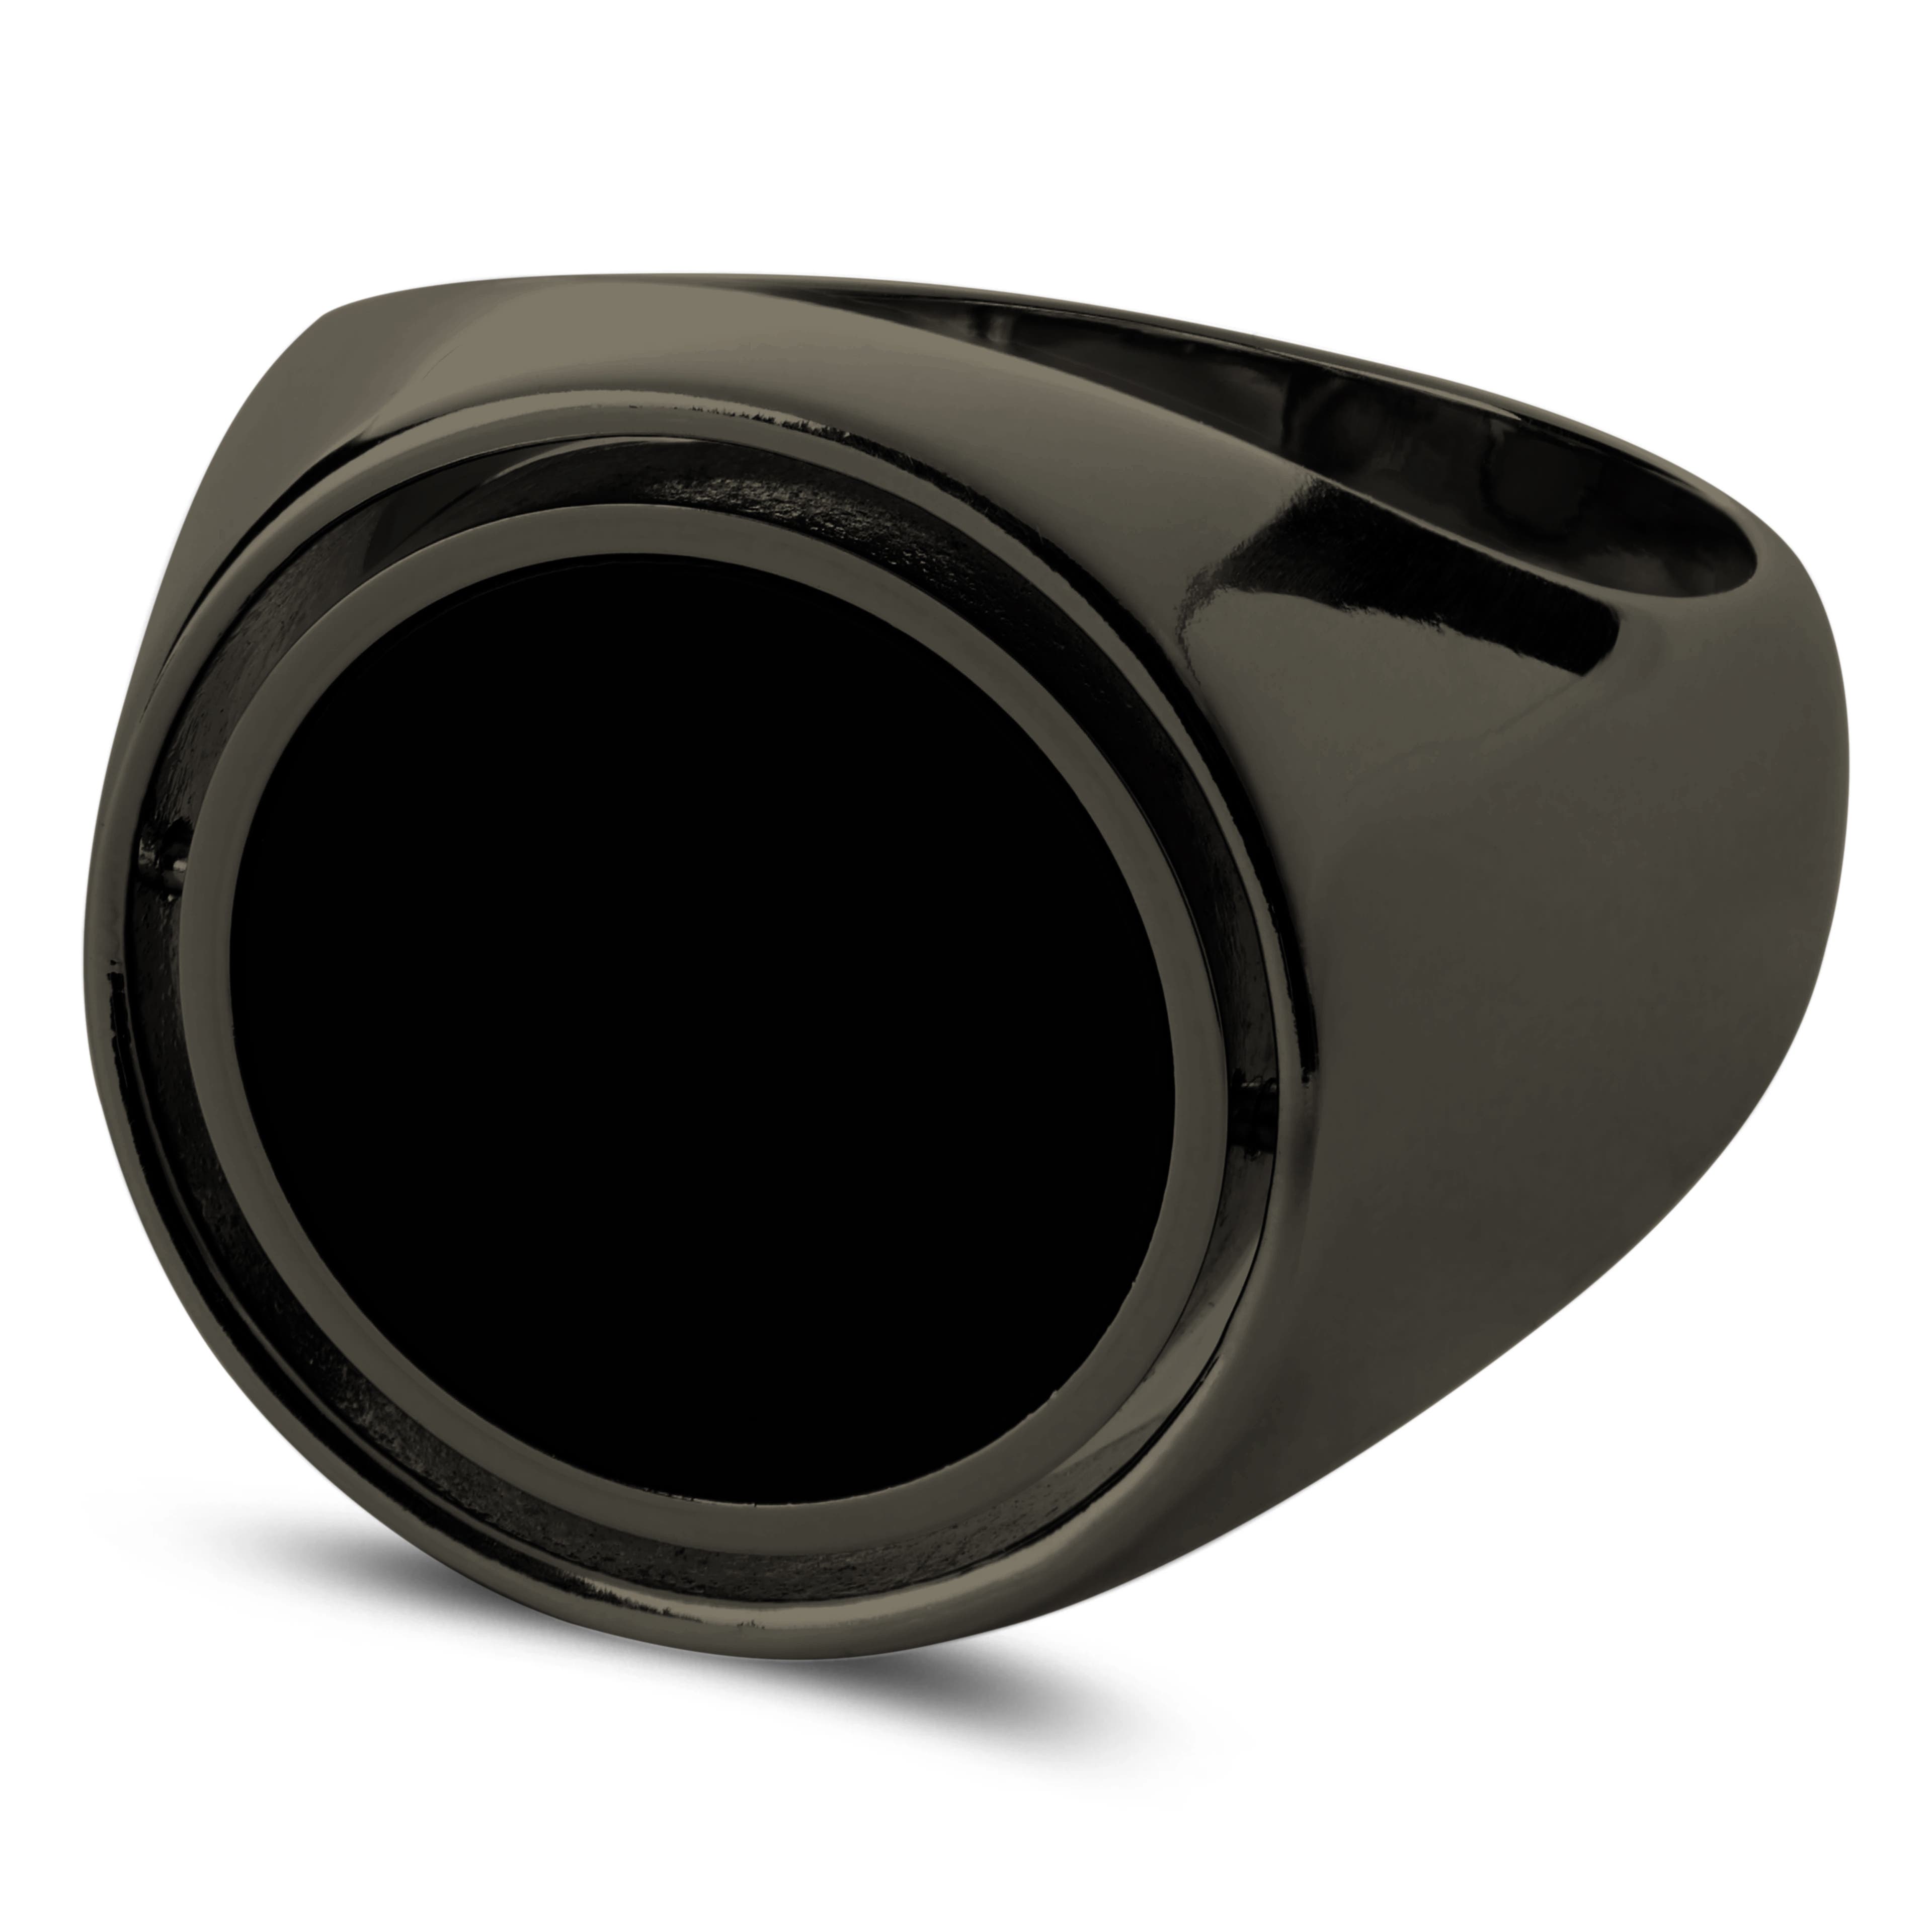 Makt | Rotating Gunmetal Black Stainless Steel And Black Onyx Signet Ring